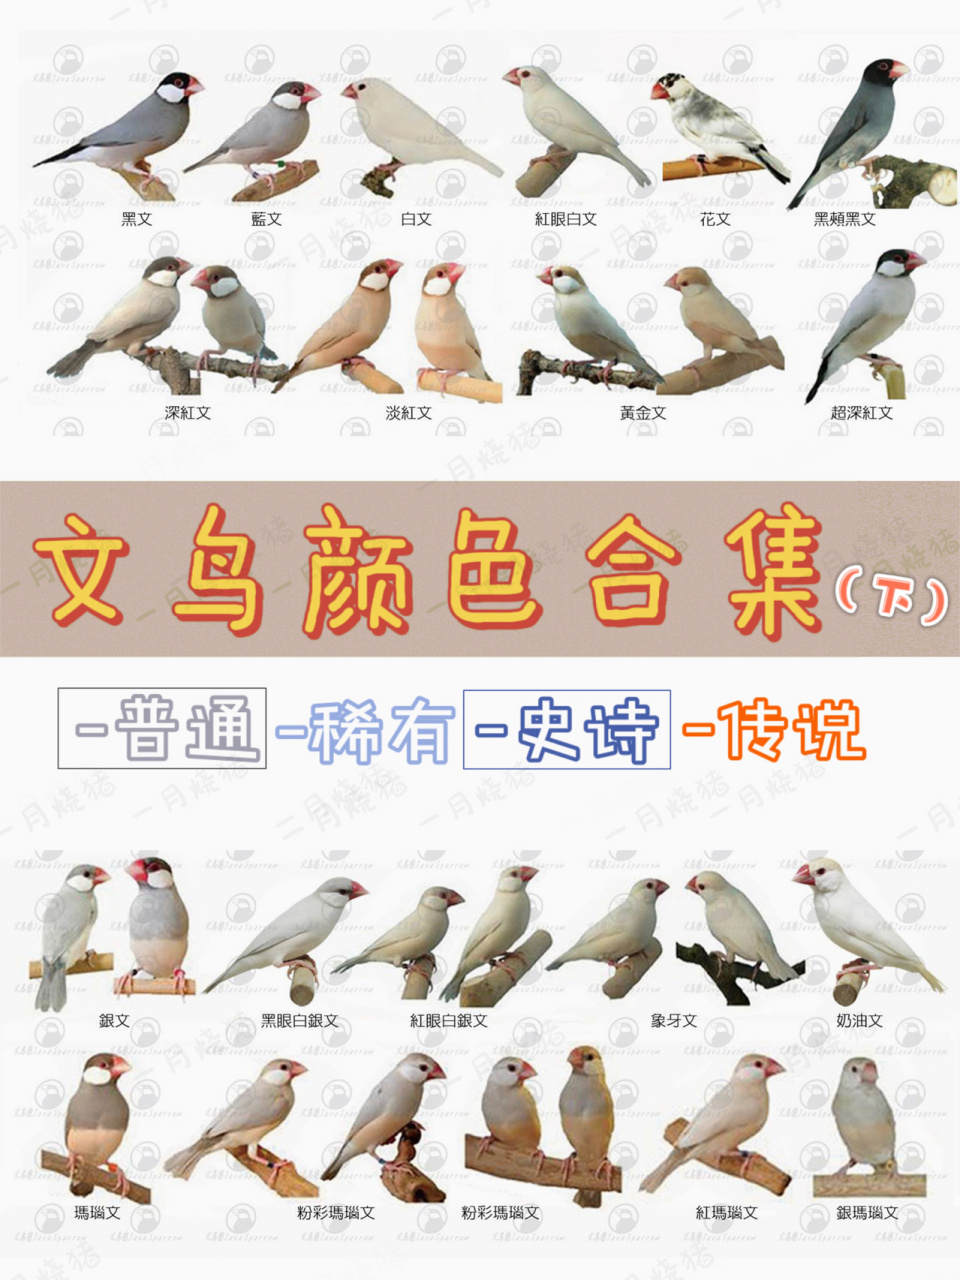 文鸟超级珍贵颜色 * 图1是台湾鸟友整理的颜色合集